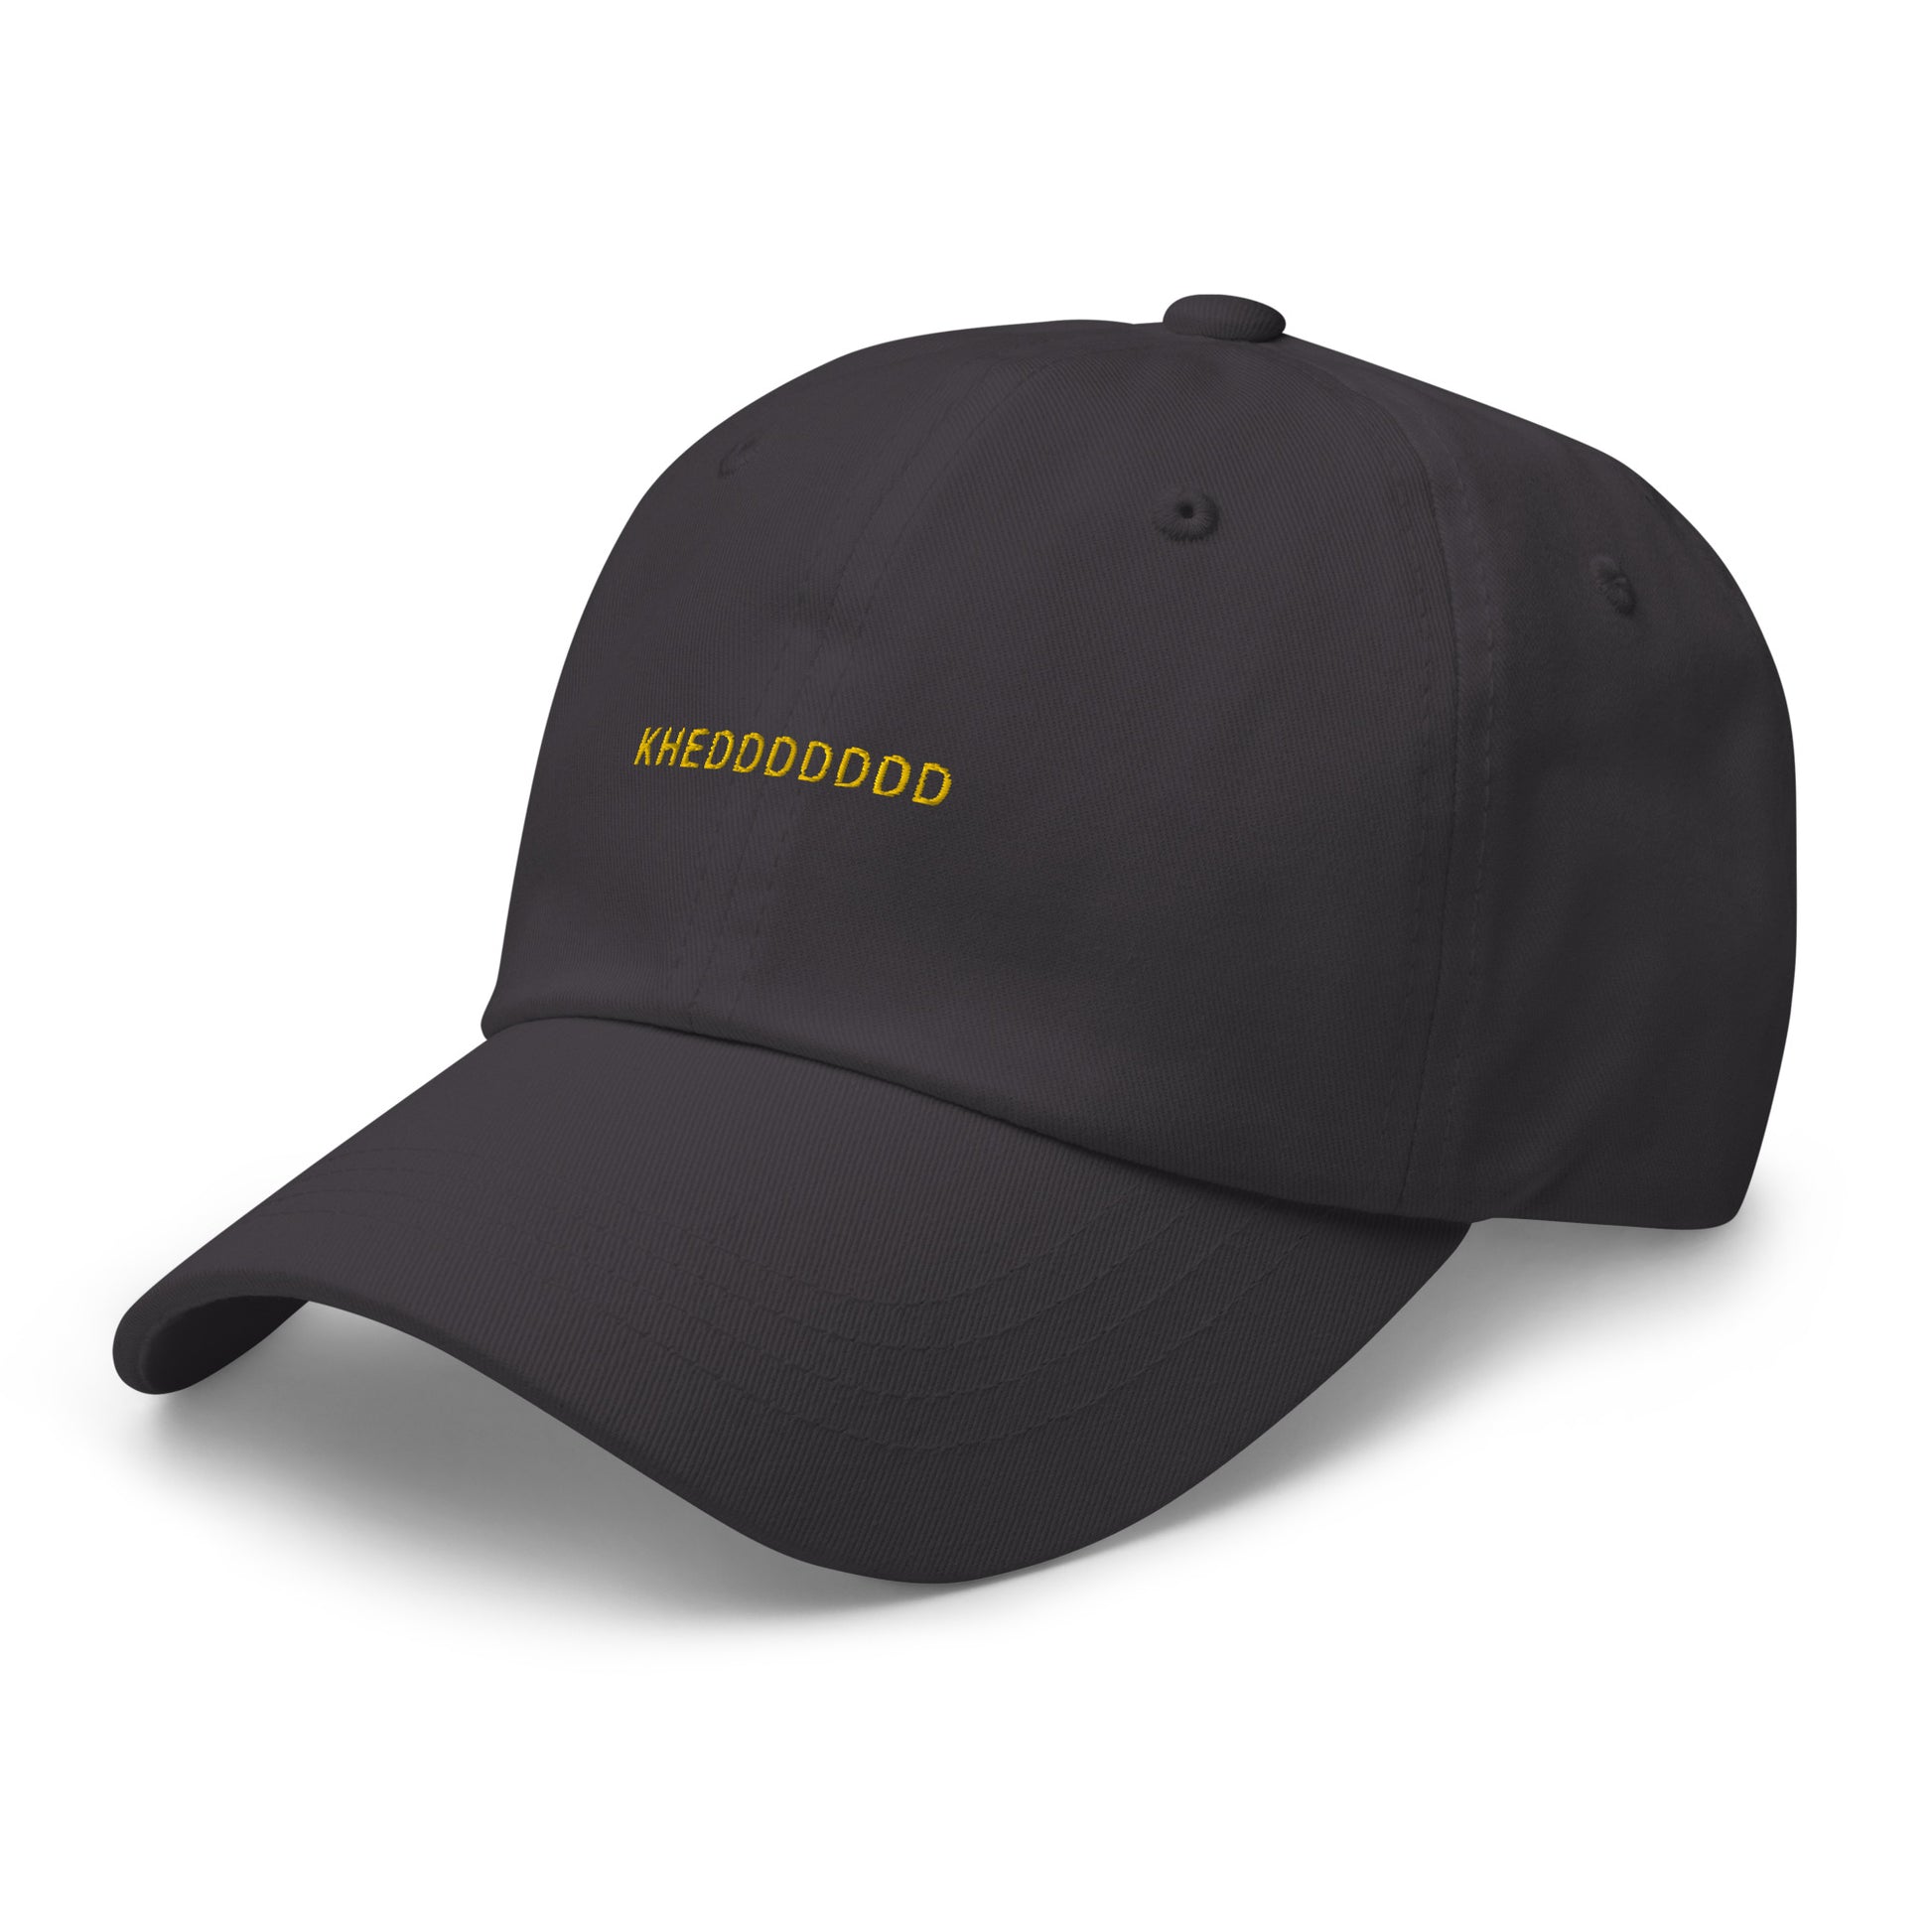 grey hat that says "khedddddd" in gold lettering